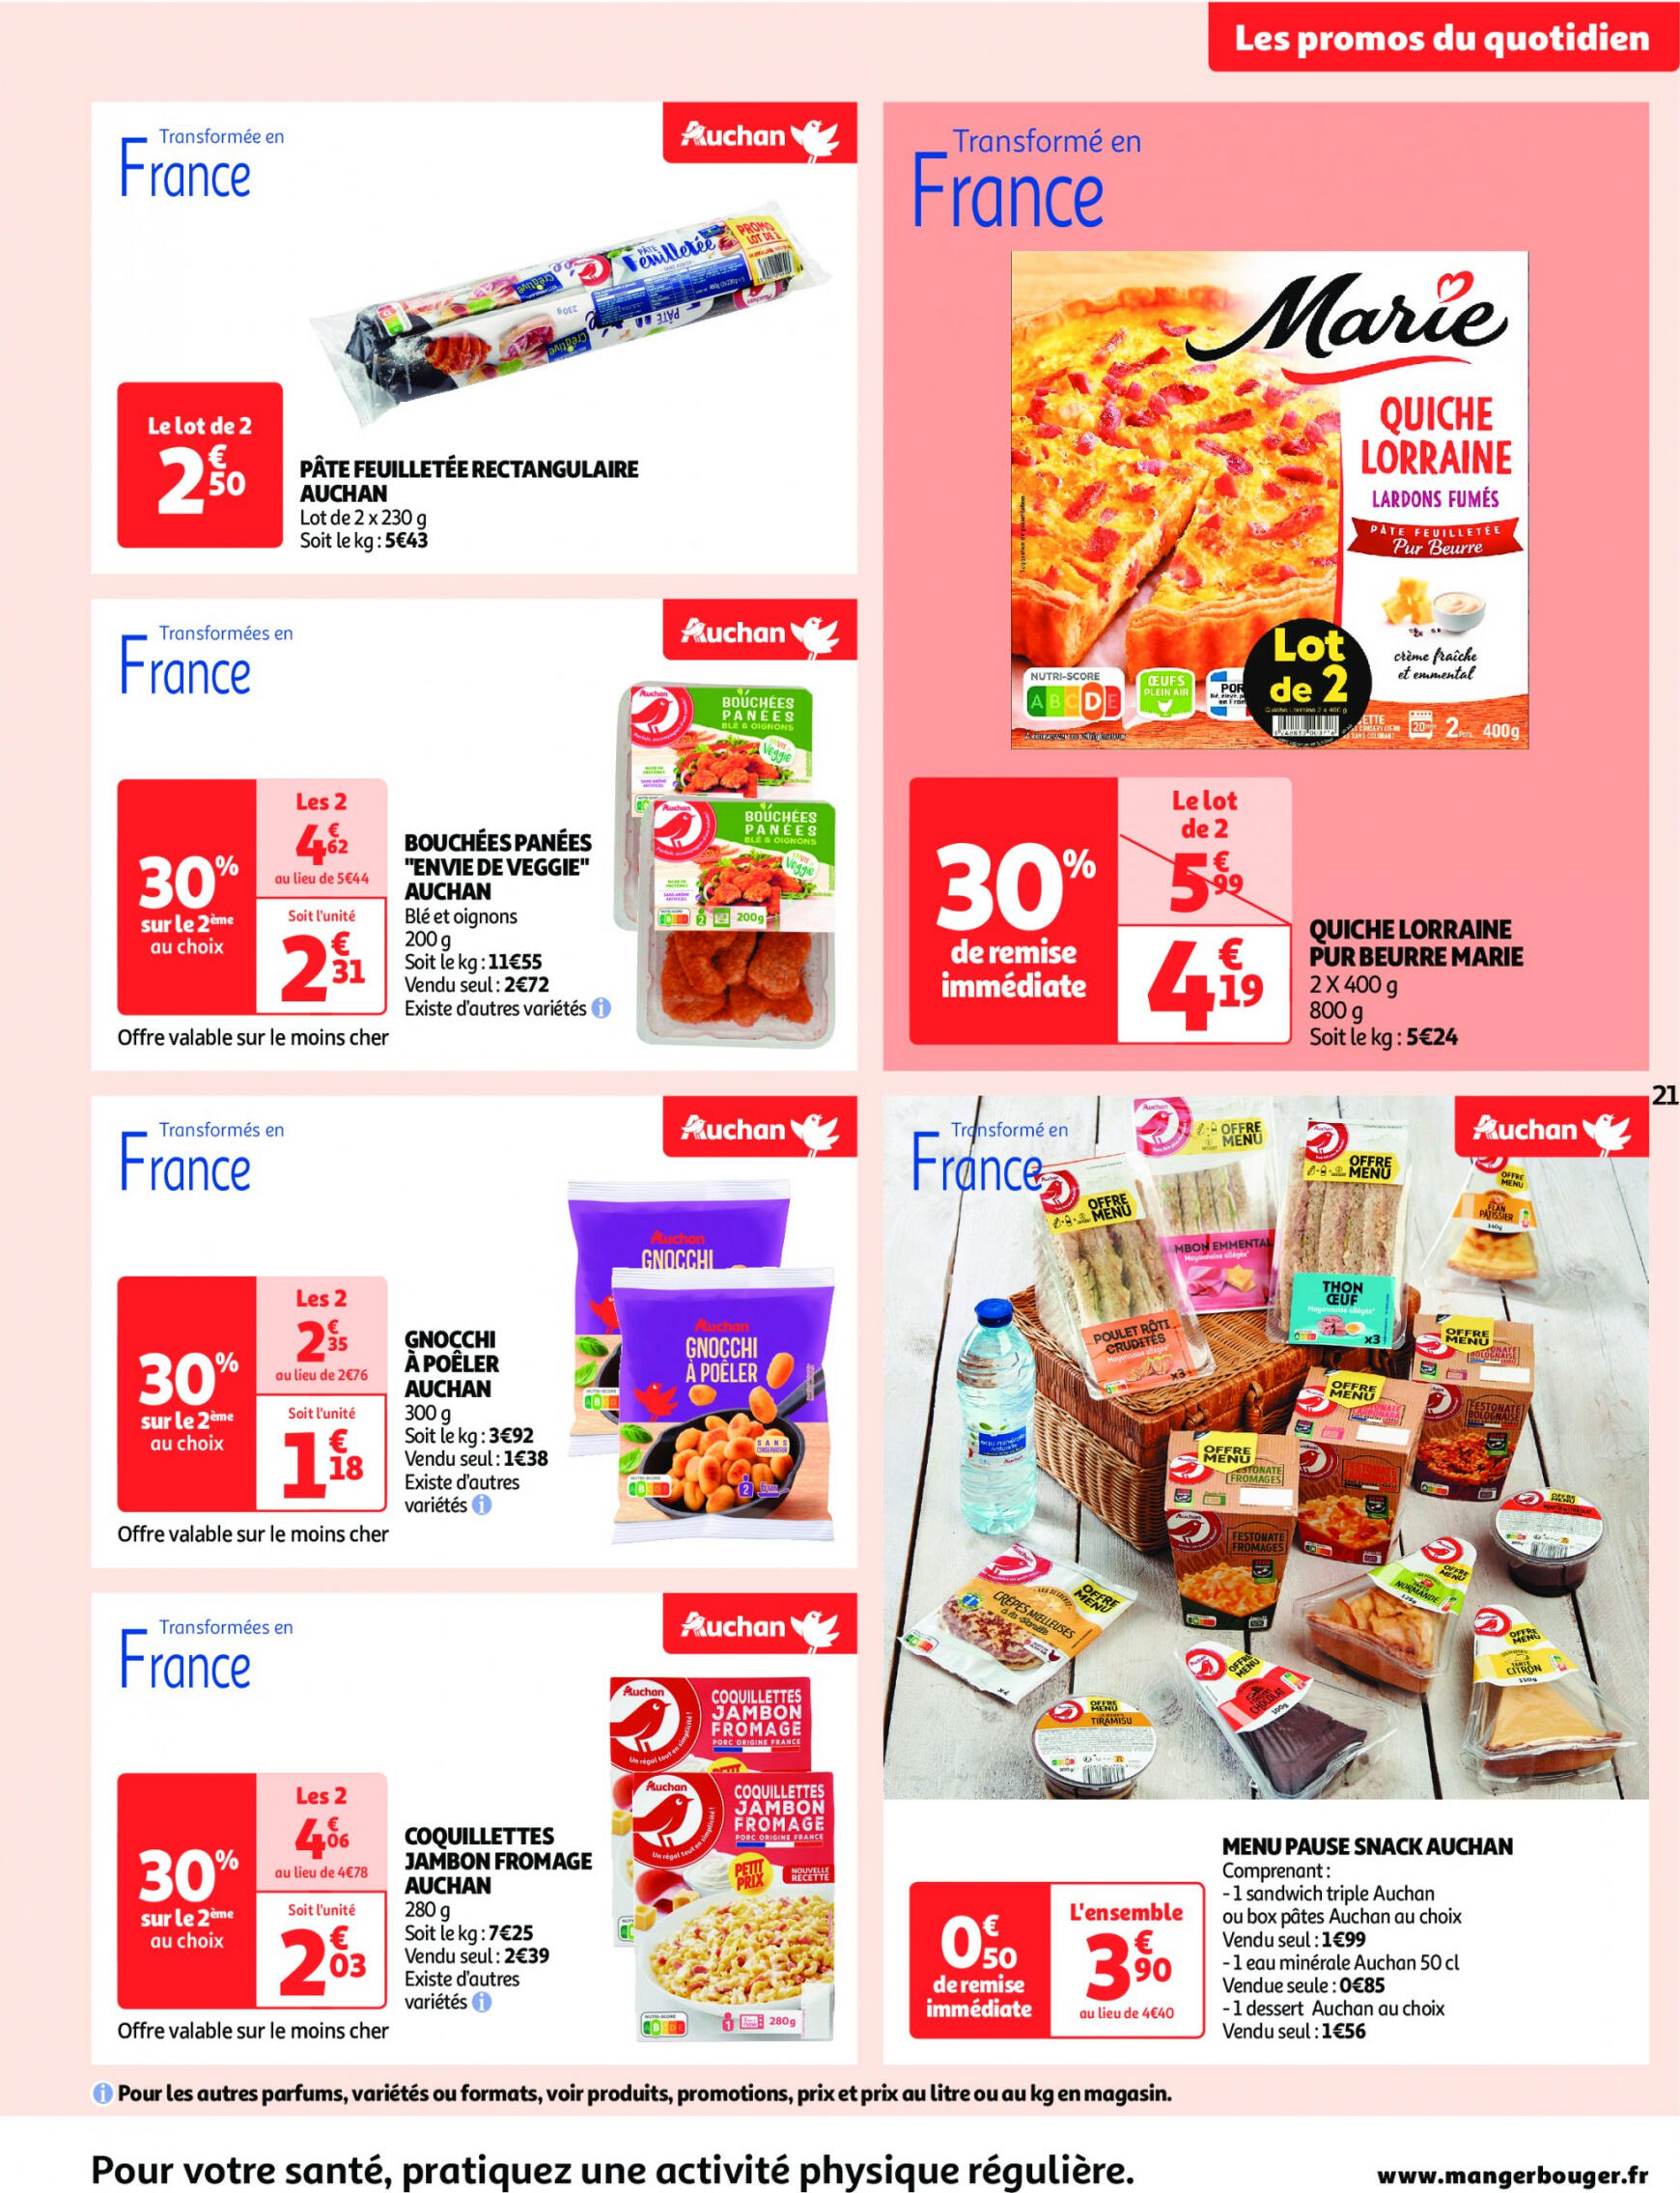 auchan - Auchan supermarché - Faites le plein de bonnes affaires folder huidig 22.05. - 26.05. - page: 21